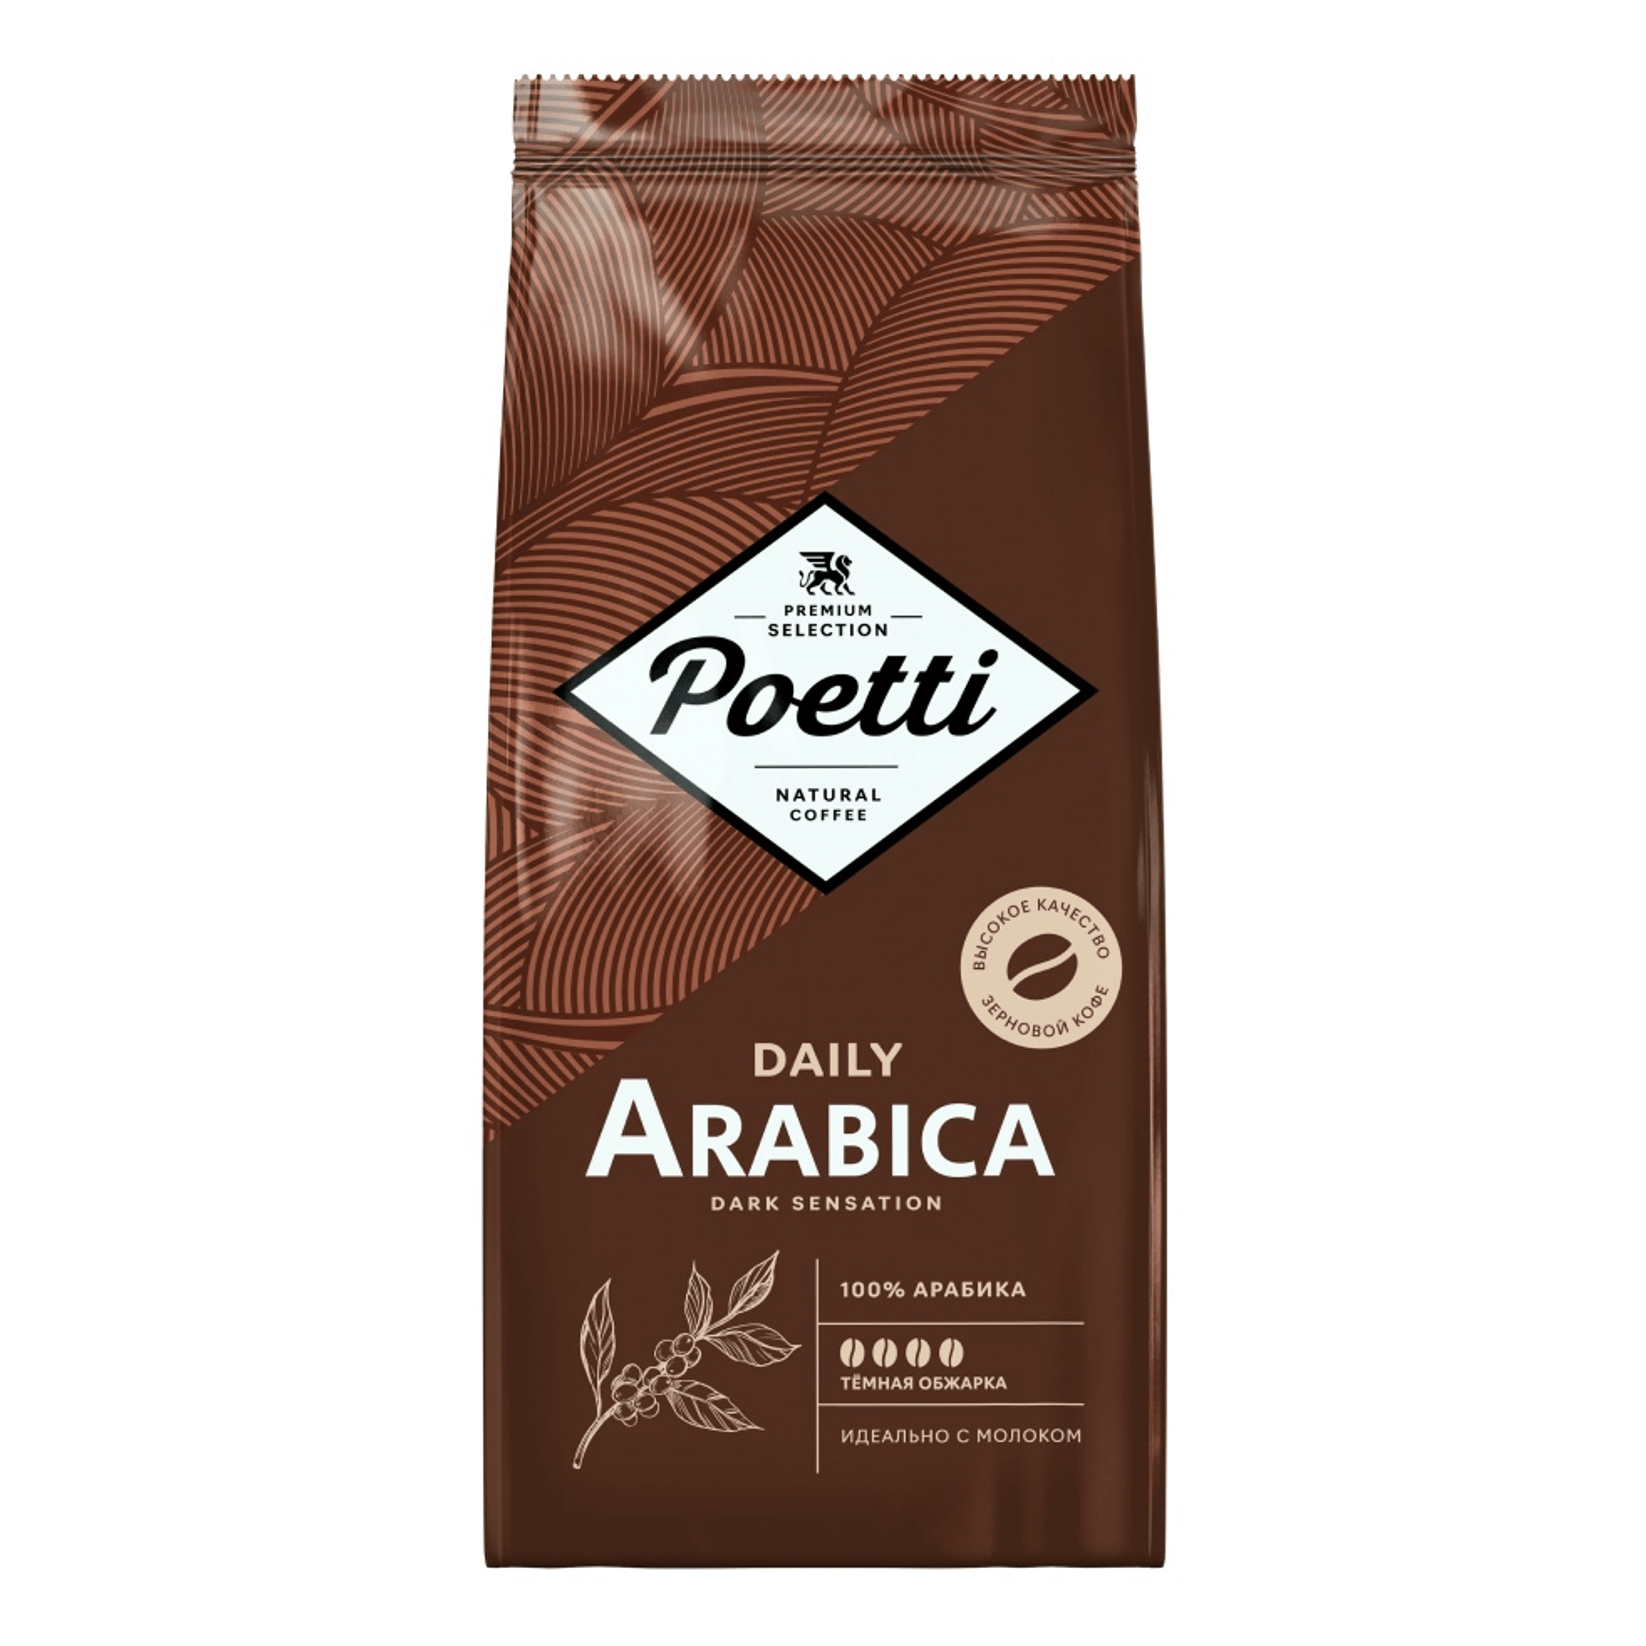 Кофе в зернах Poetti Daily Arabica Dark Sensation 750 г кофе в зернах poetti daily arabica 250 г